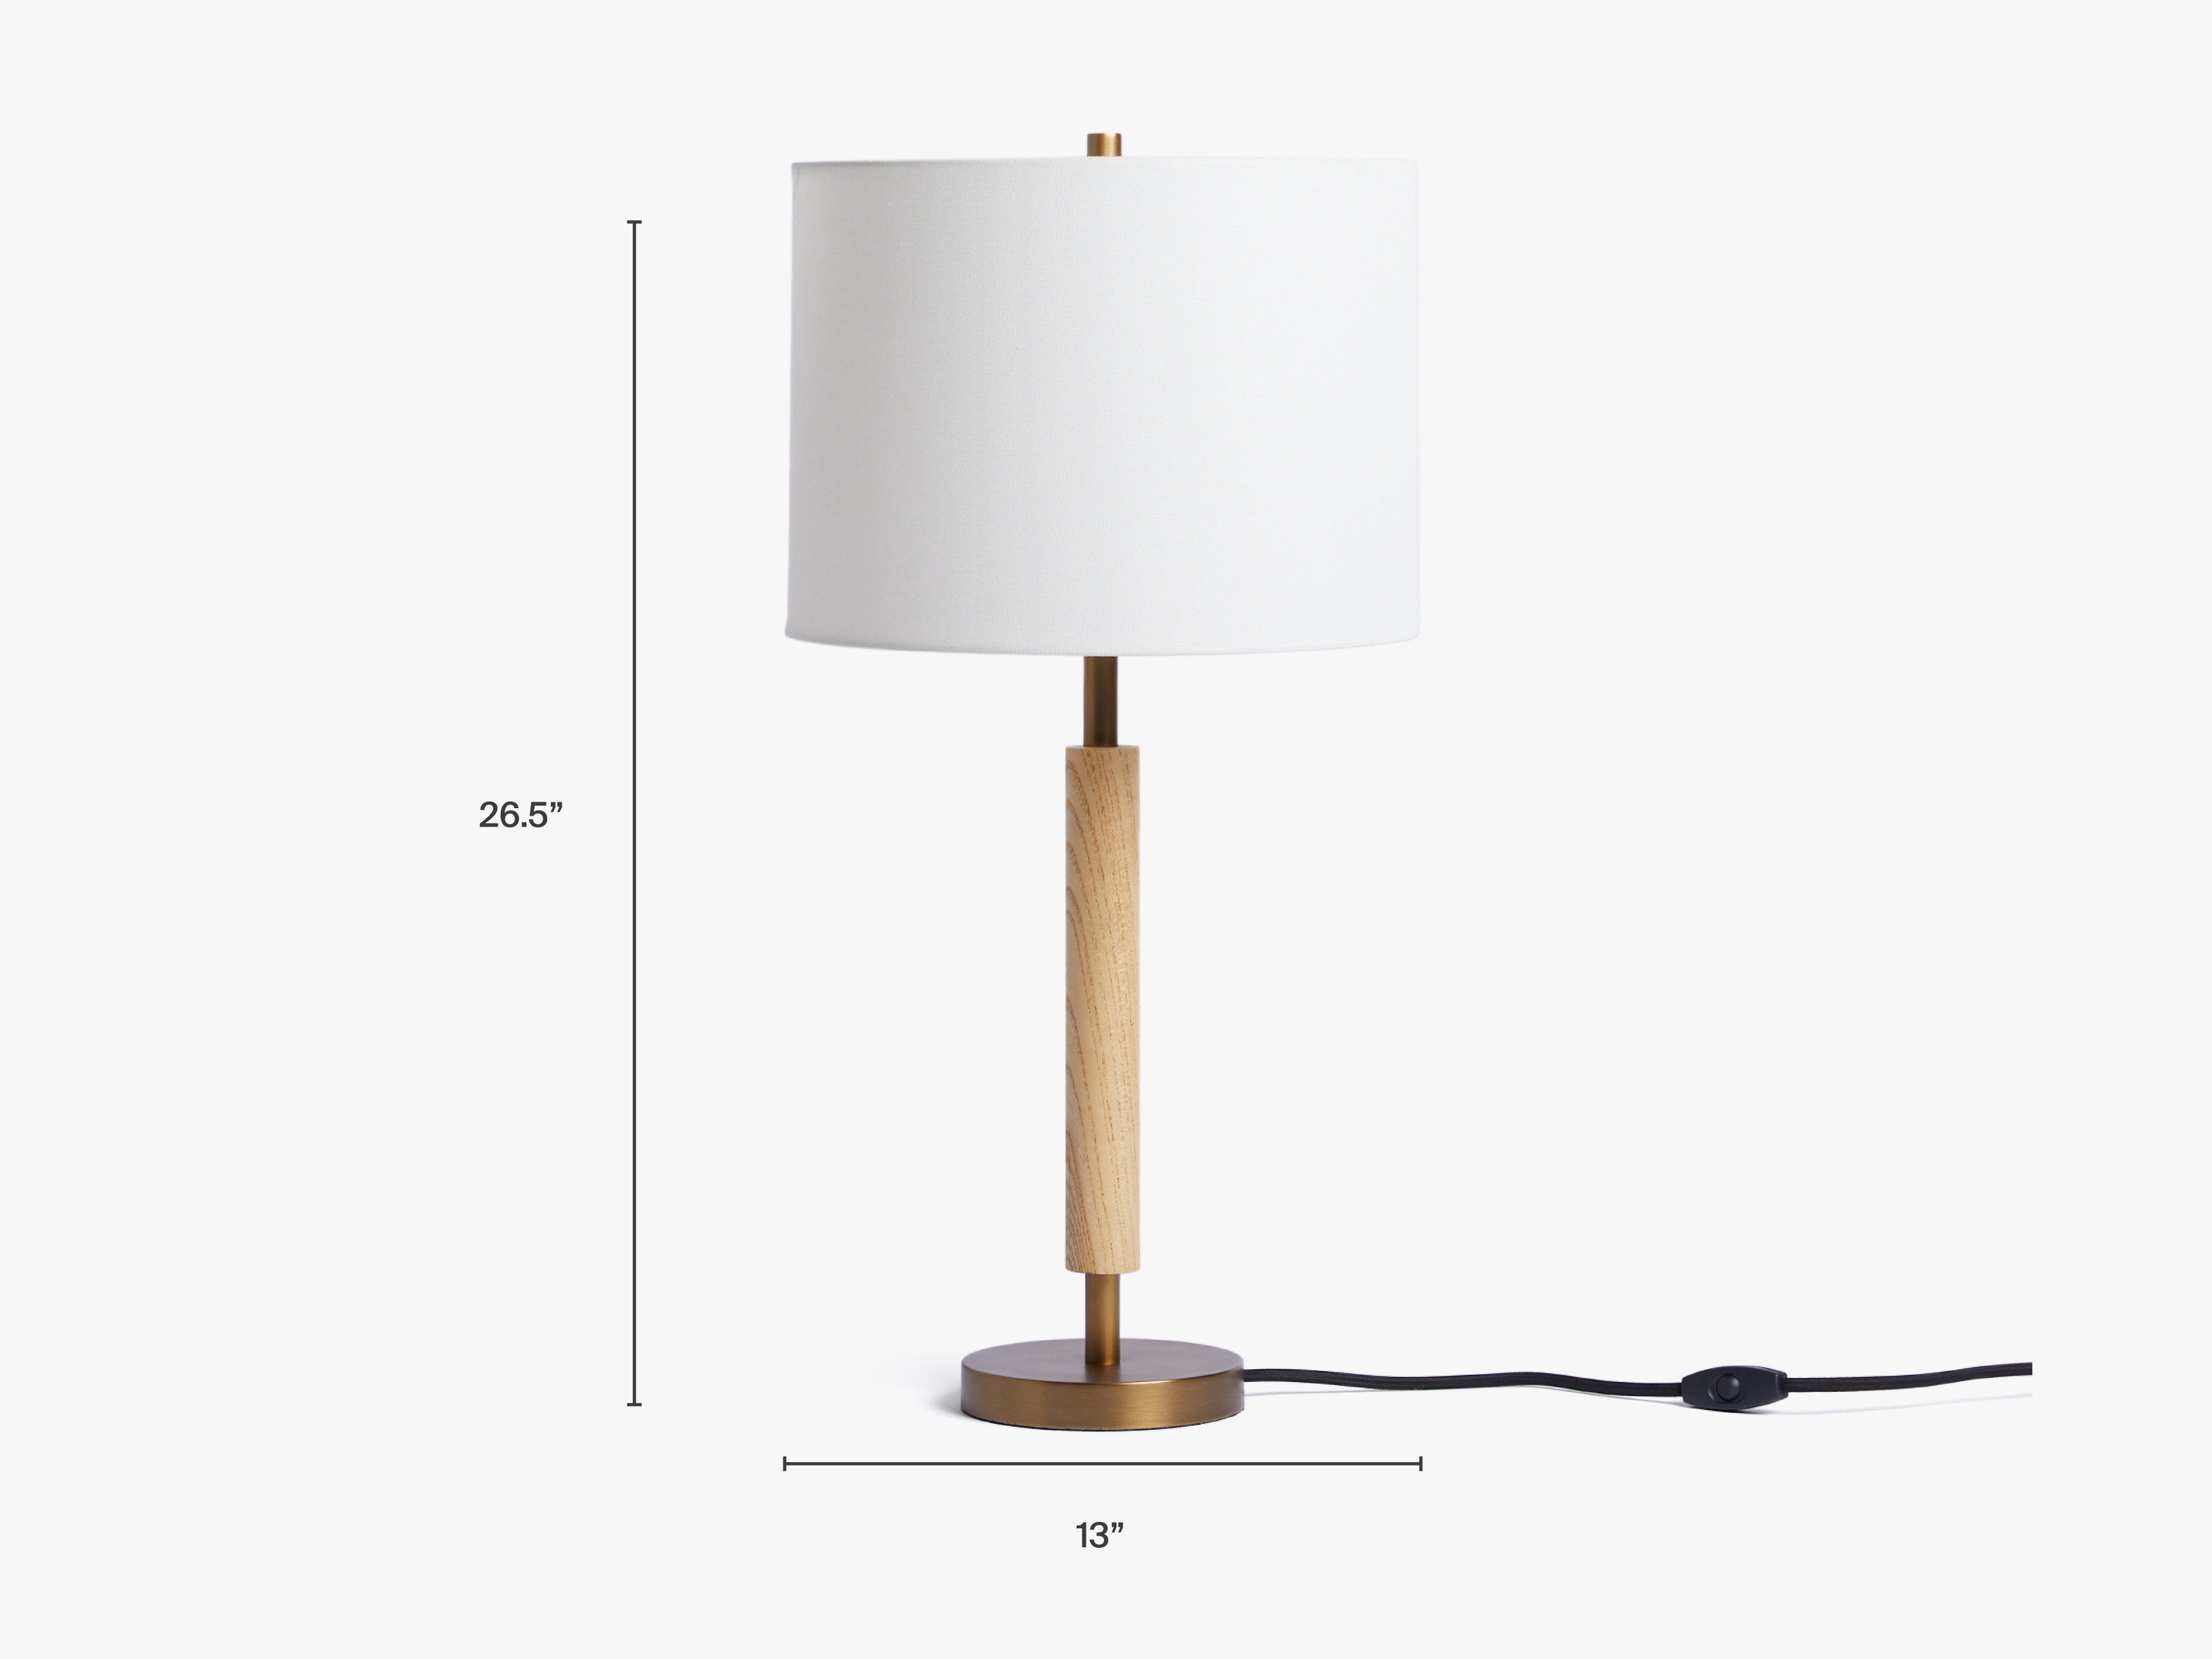 Oak-Table-Lamp Dimensions